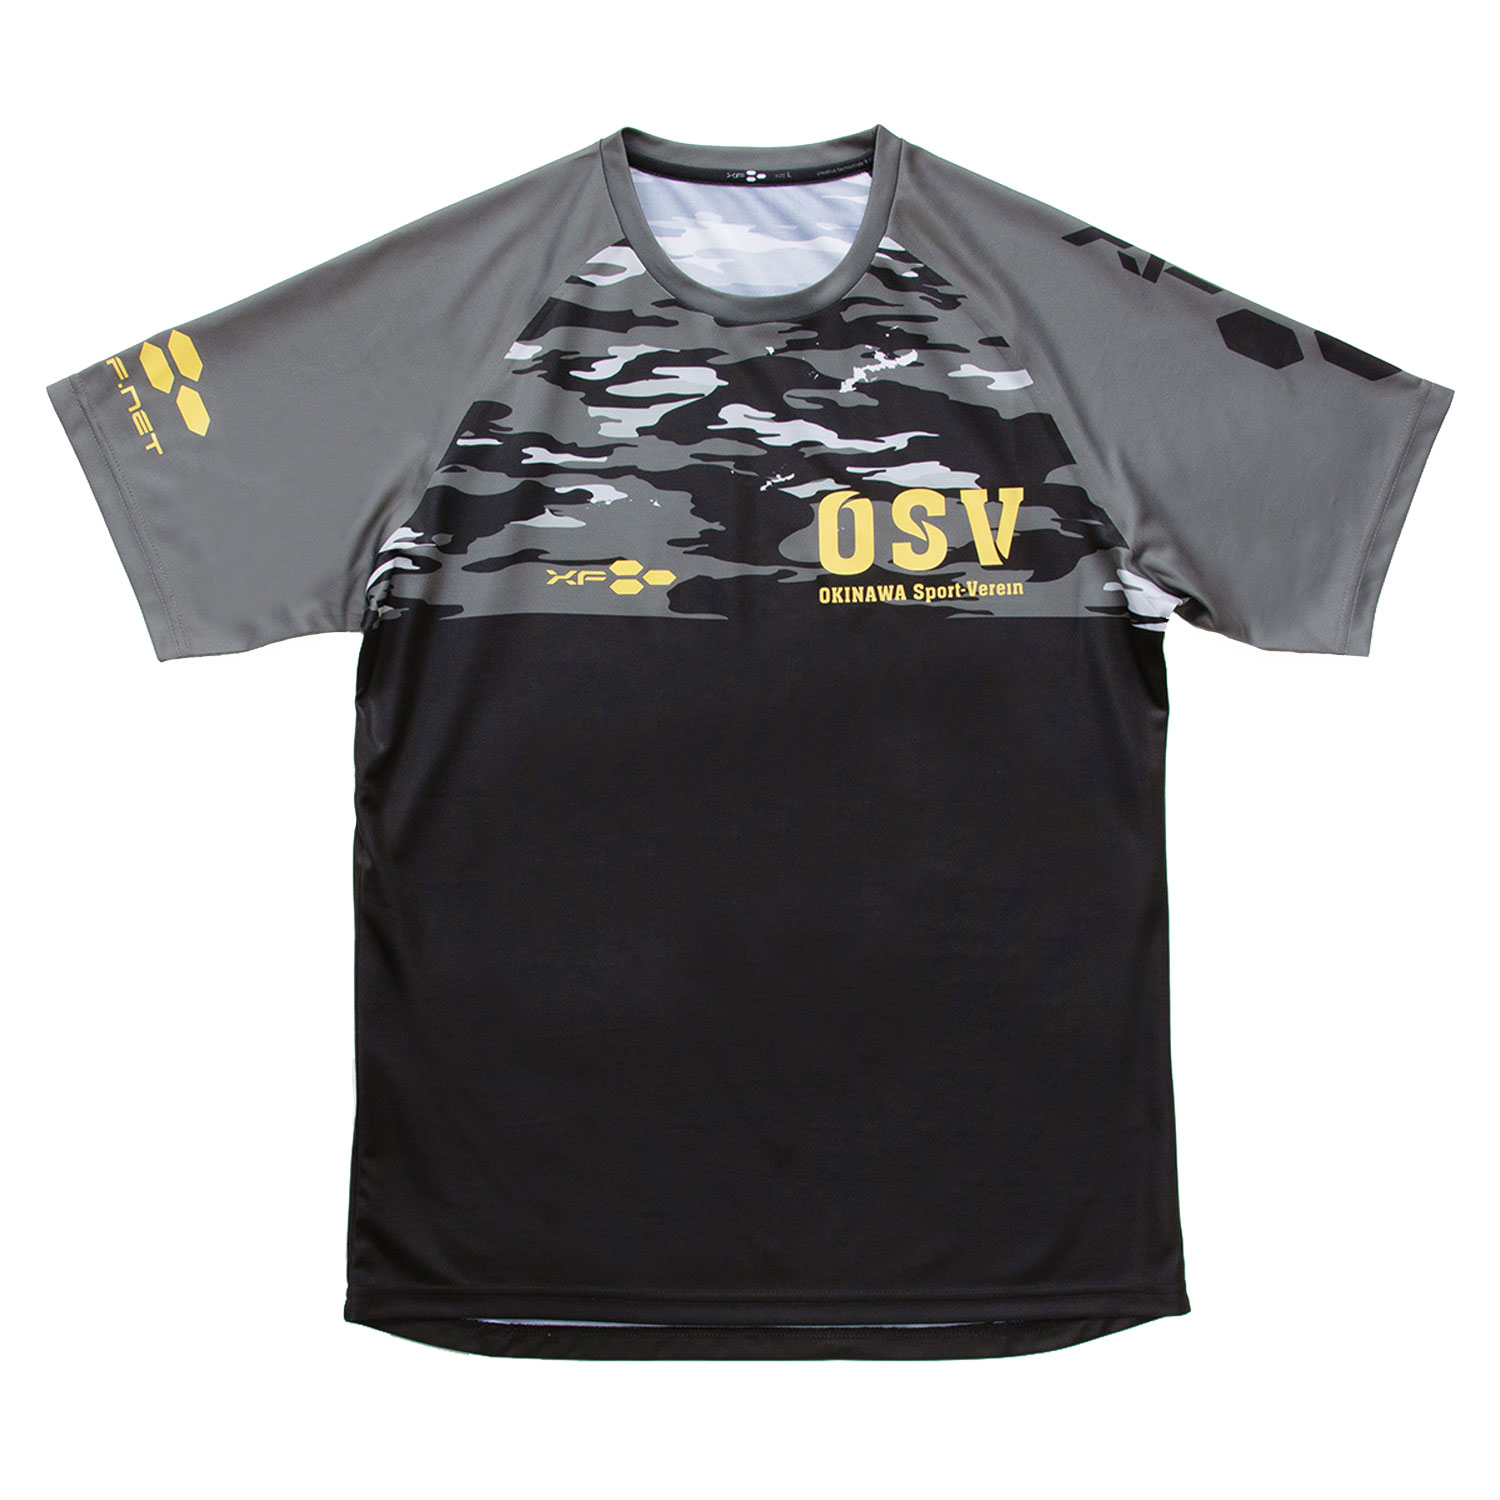 沖縄SV(OSV) ドライTシャツ 迷彩 ブラック